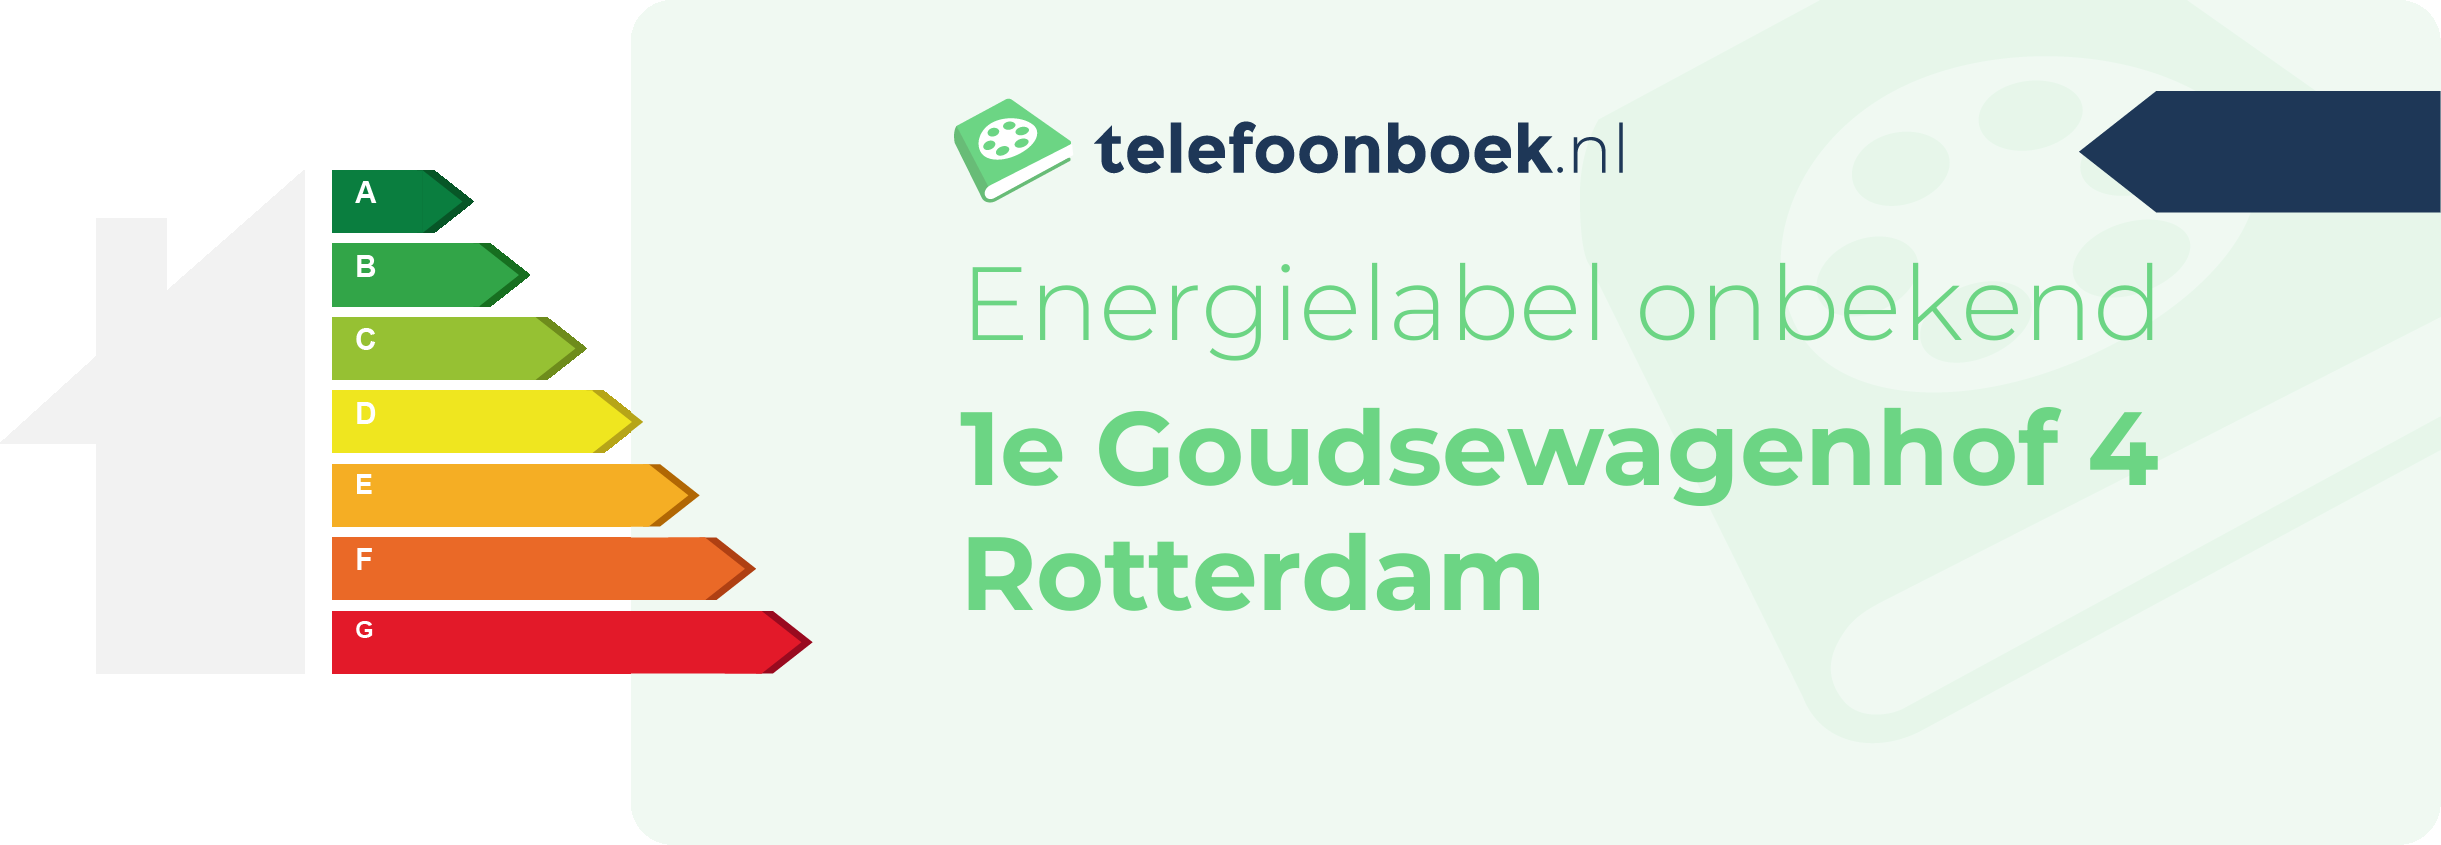 Energielabel 1e Goudsewagenhof 4 Rotterdam